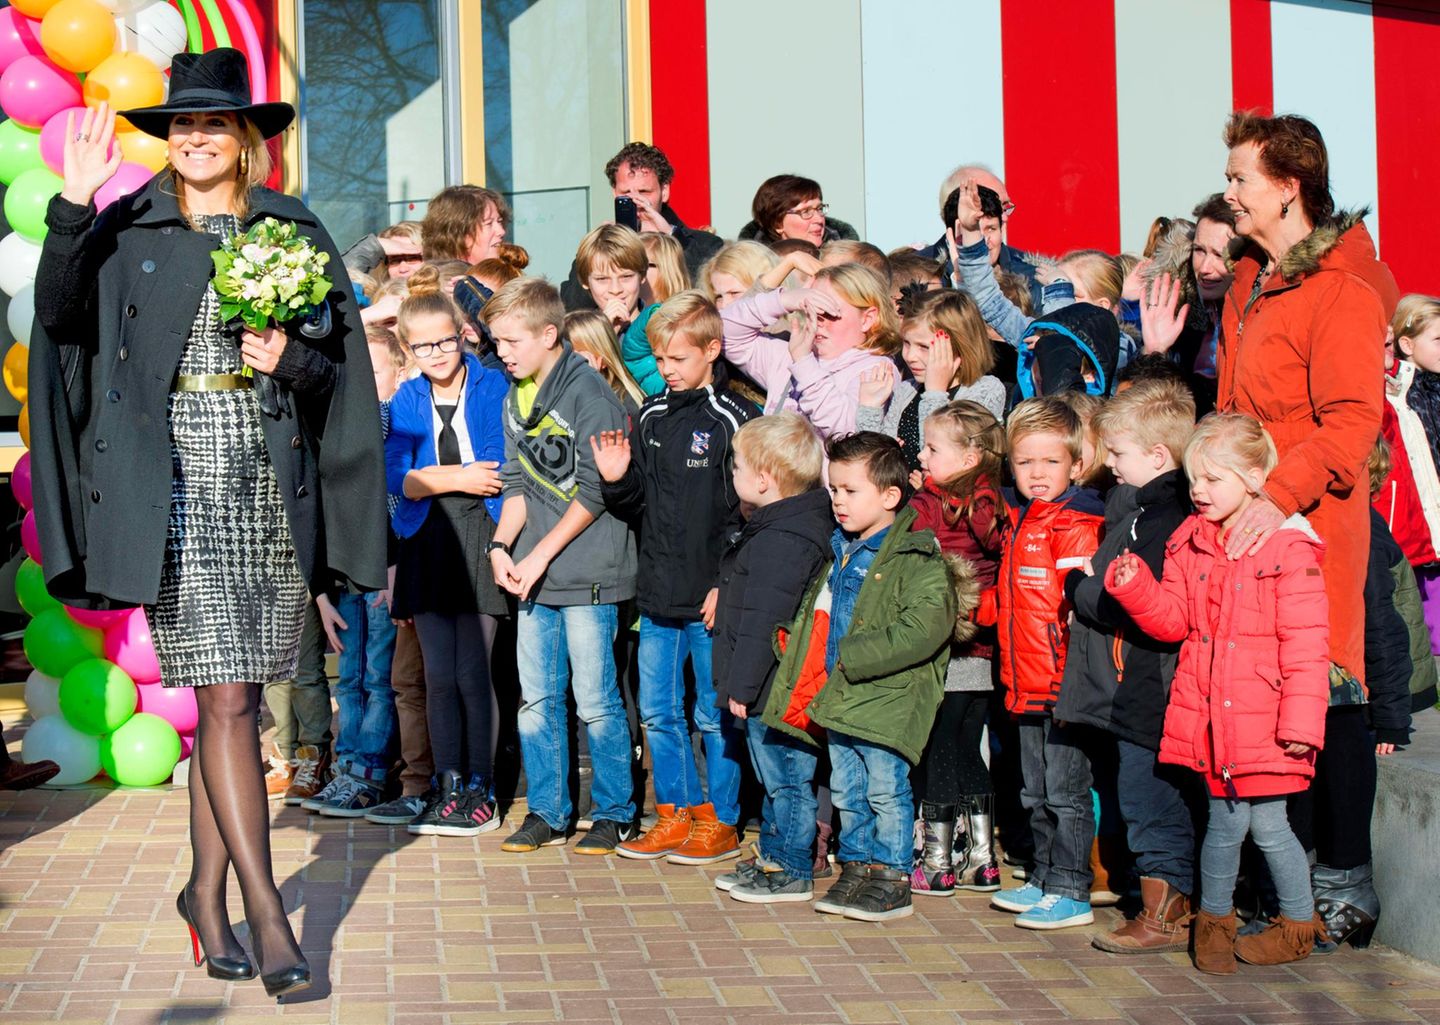 21. November 2014: Königin Máxima hat die Ehre, in Joure eine neue Schule zu eröffnen. Die Schüler der "Brede School" stehen ganz diszipliniert in einer Reihe, als die Königin winkend an ihnen vorbeigeht.